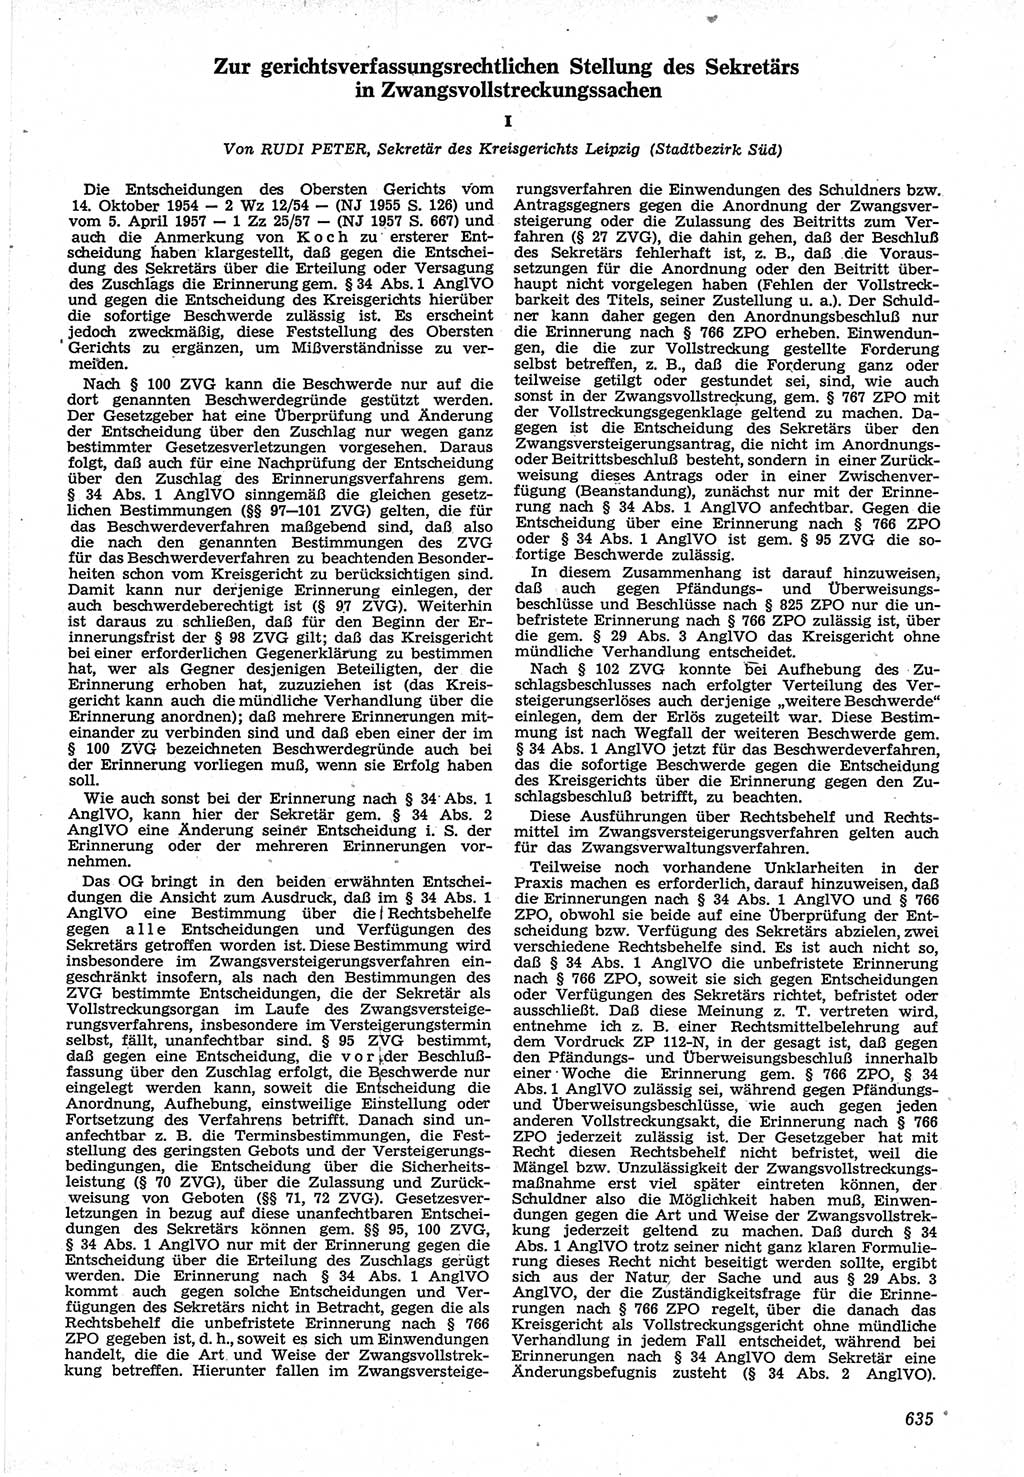 Neue Justiz (NJ), Zeitschrift für Recht und Rechtswissenschaft [Deutsche Demokratische Republik (DDR)], 12. Jahrgang 1958, Seite 635 (NJ DDR 1958, S. 635)